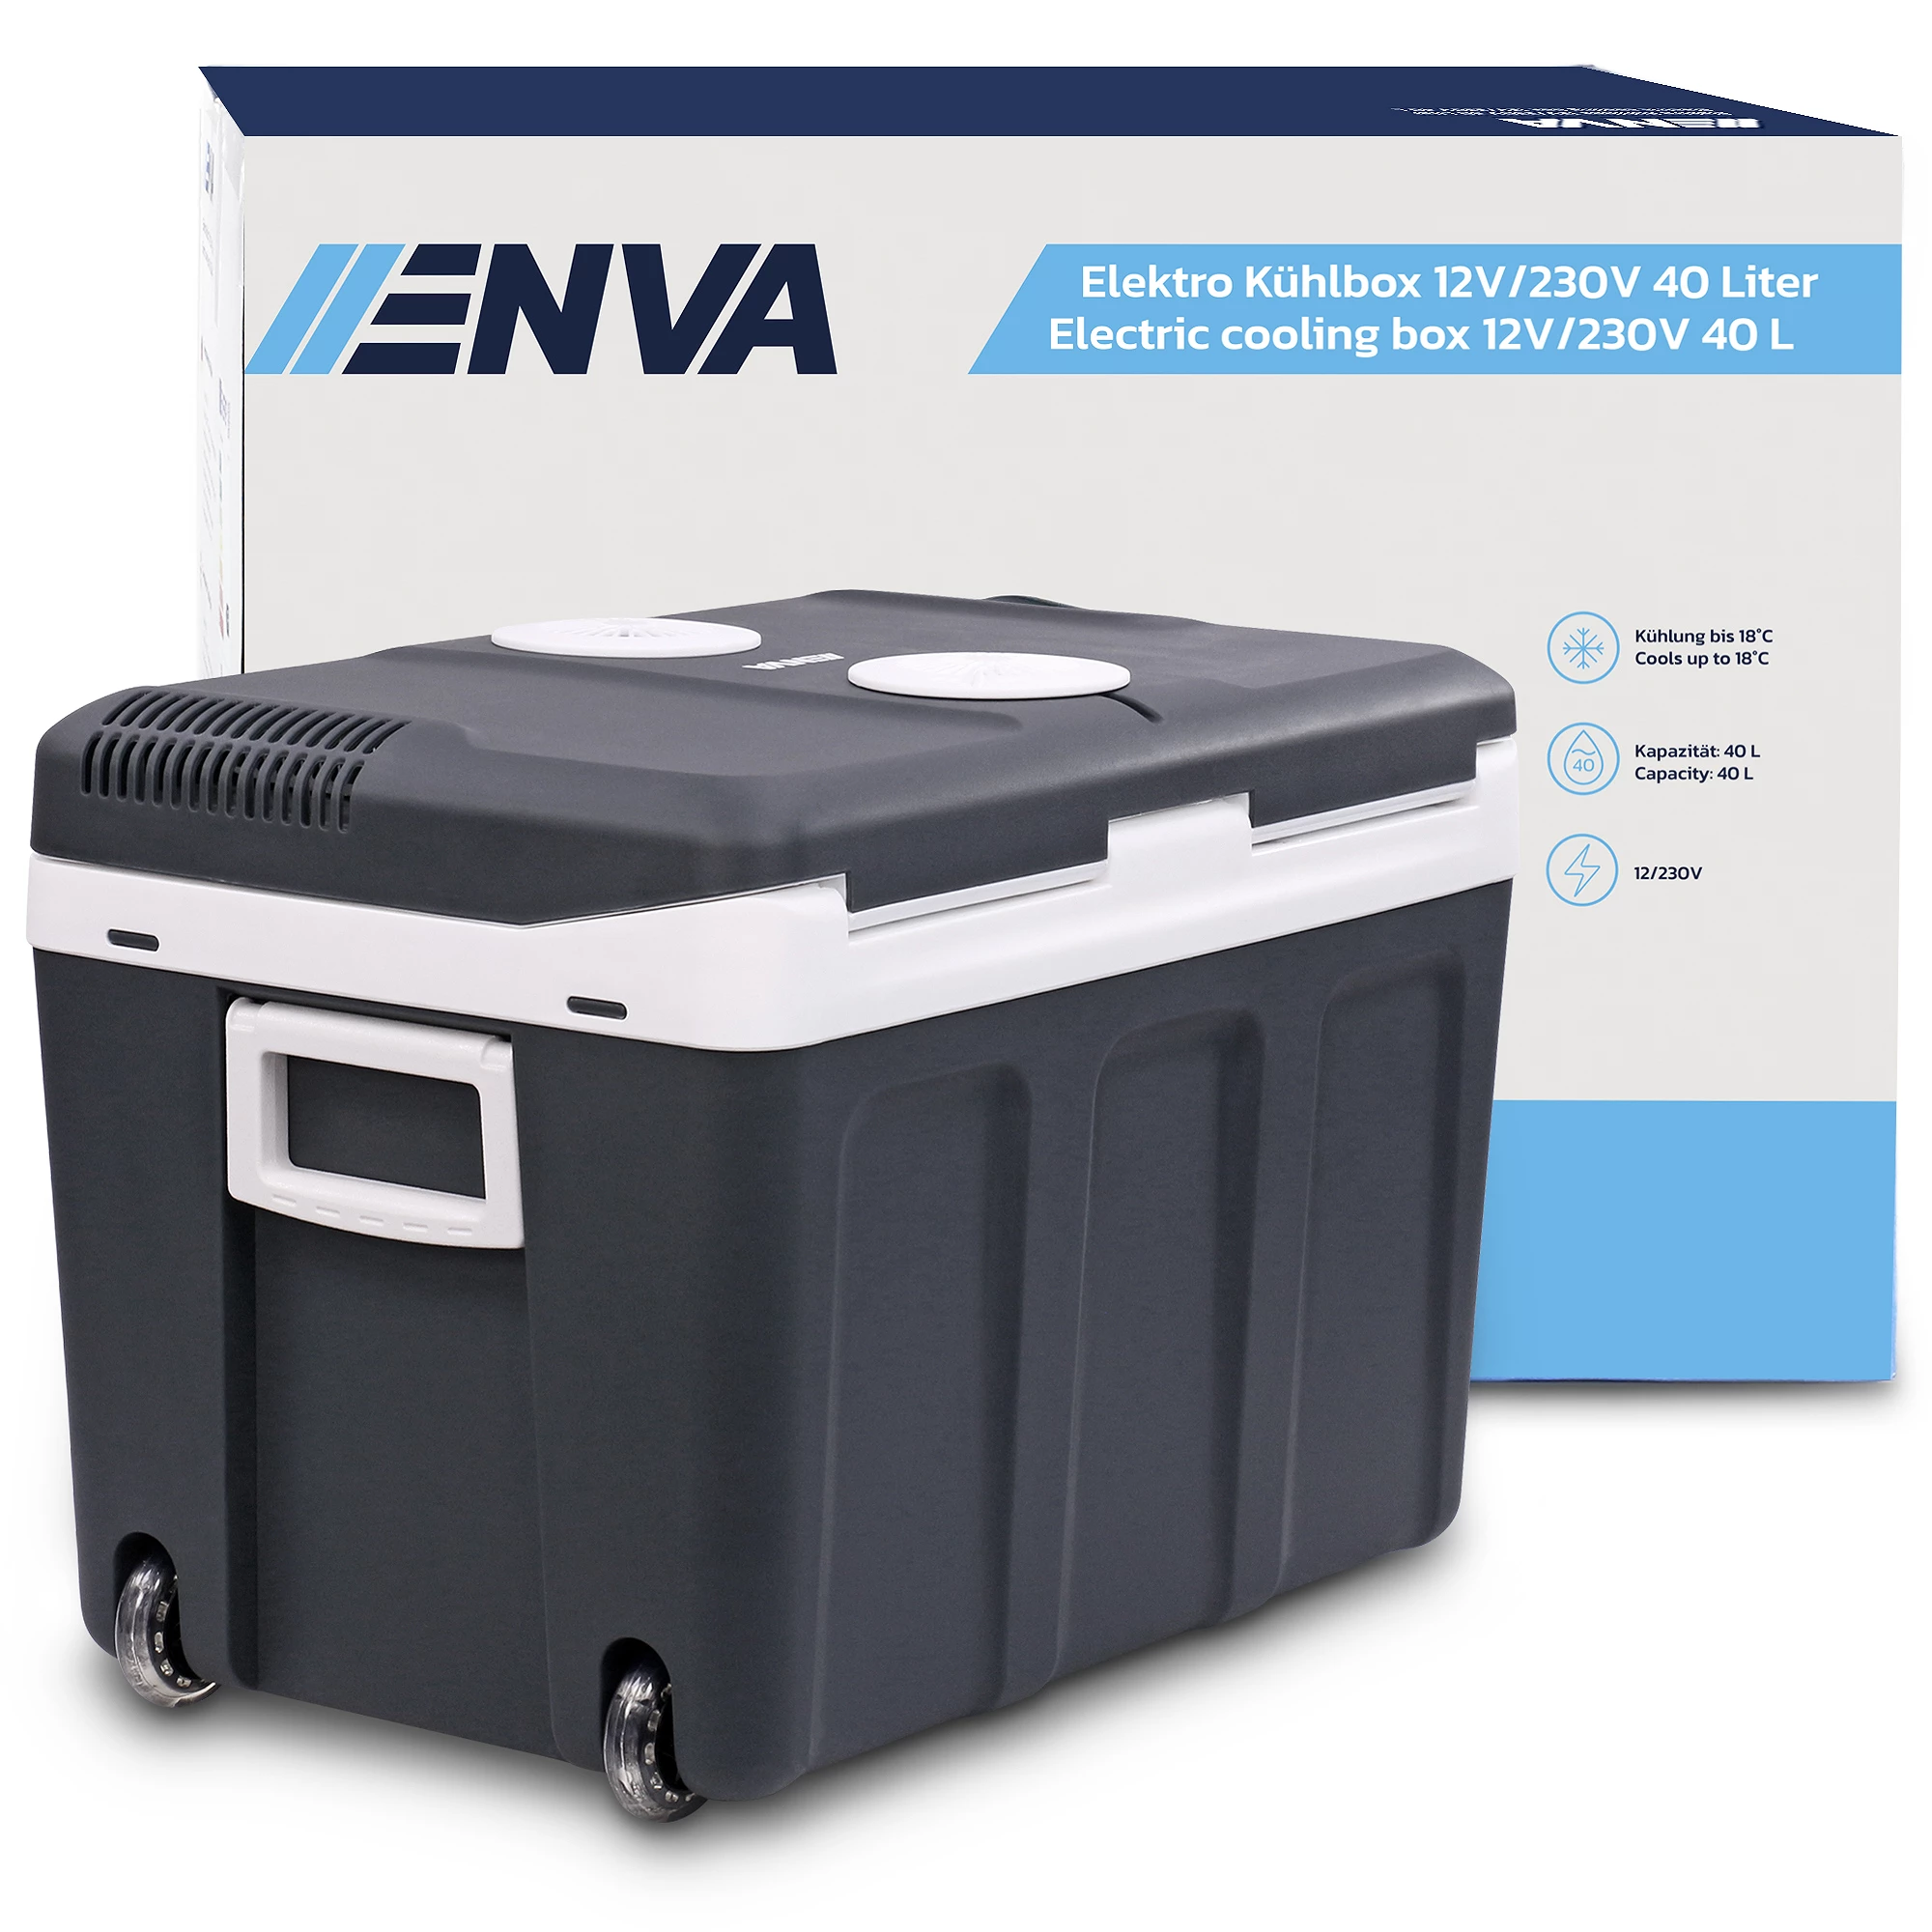 Enva Elektro Kühlbox 12V/230V 40 Liter 40669399 günstig online kaufen